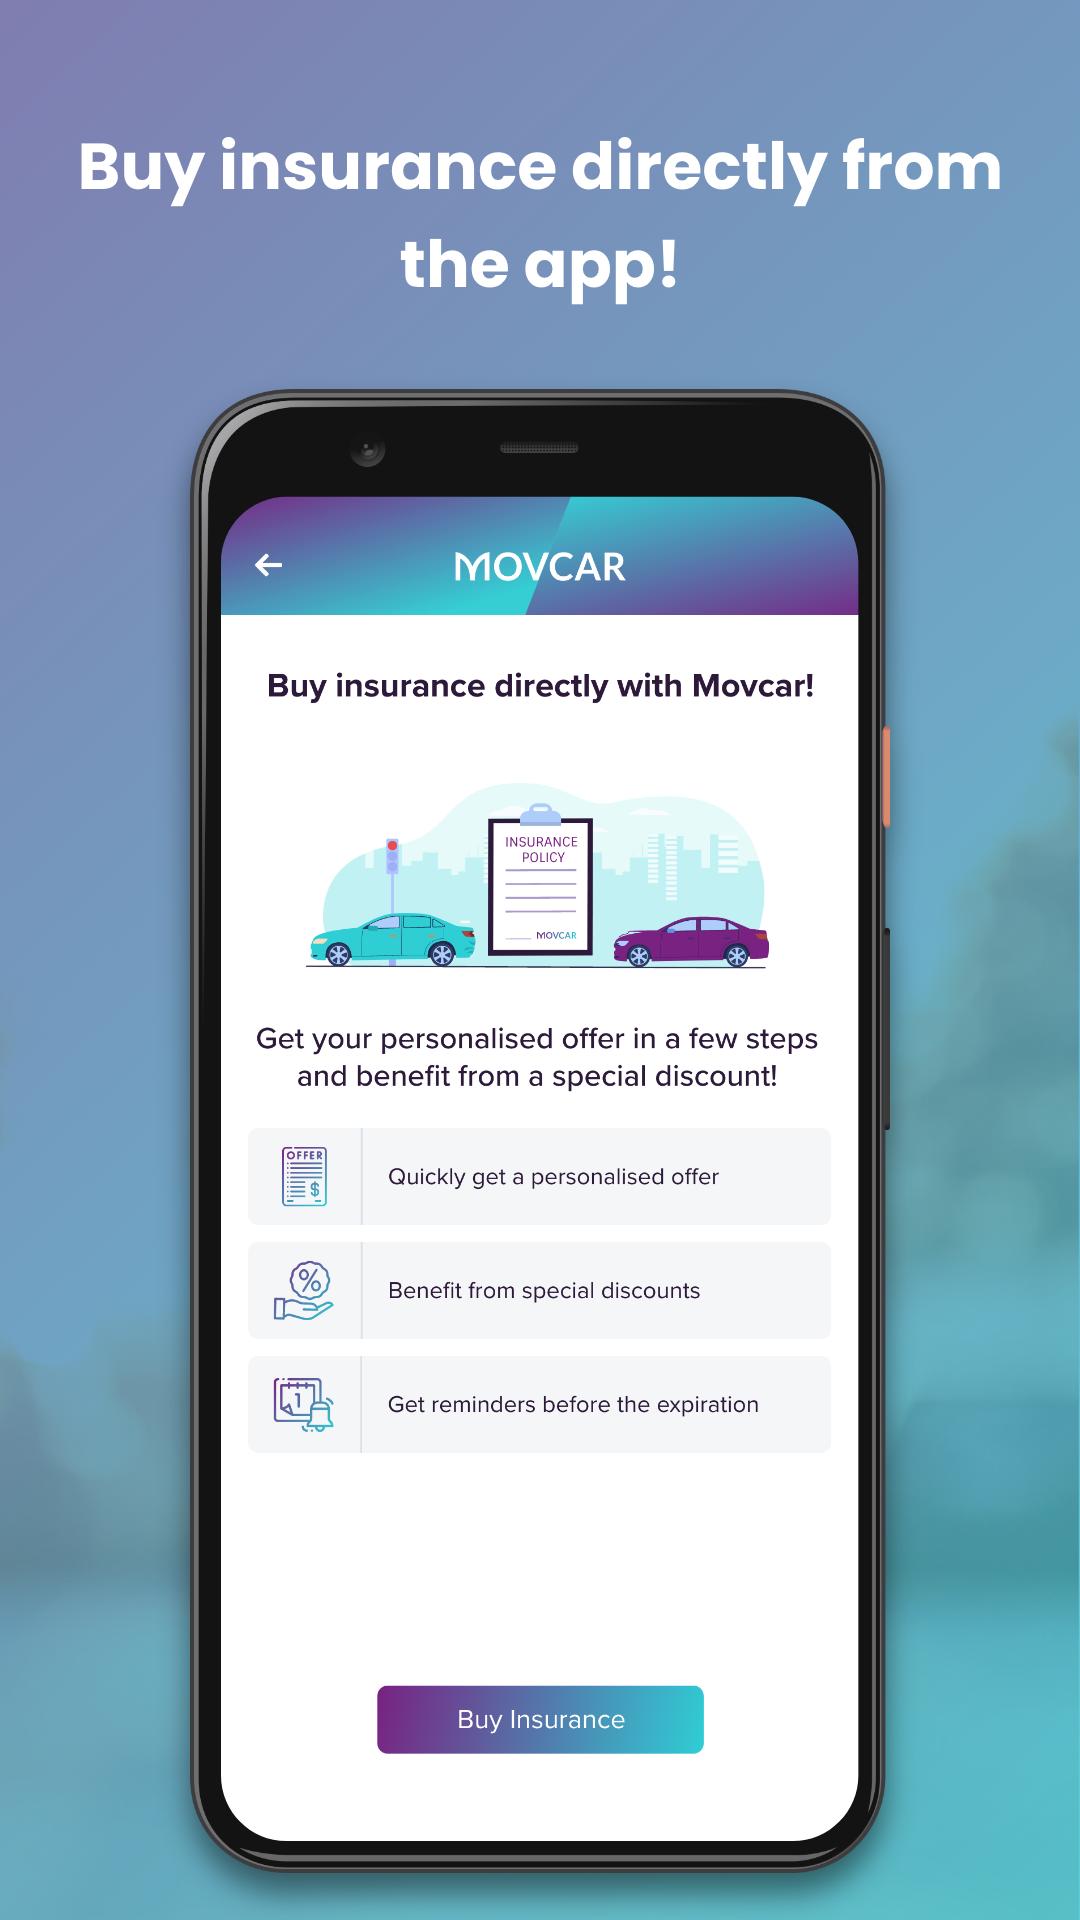 MOVCAR - The Best Car App!